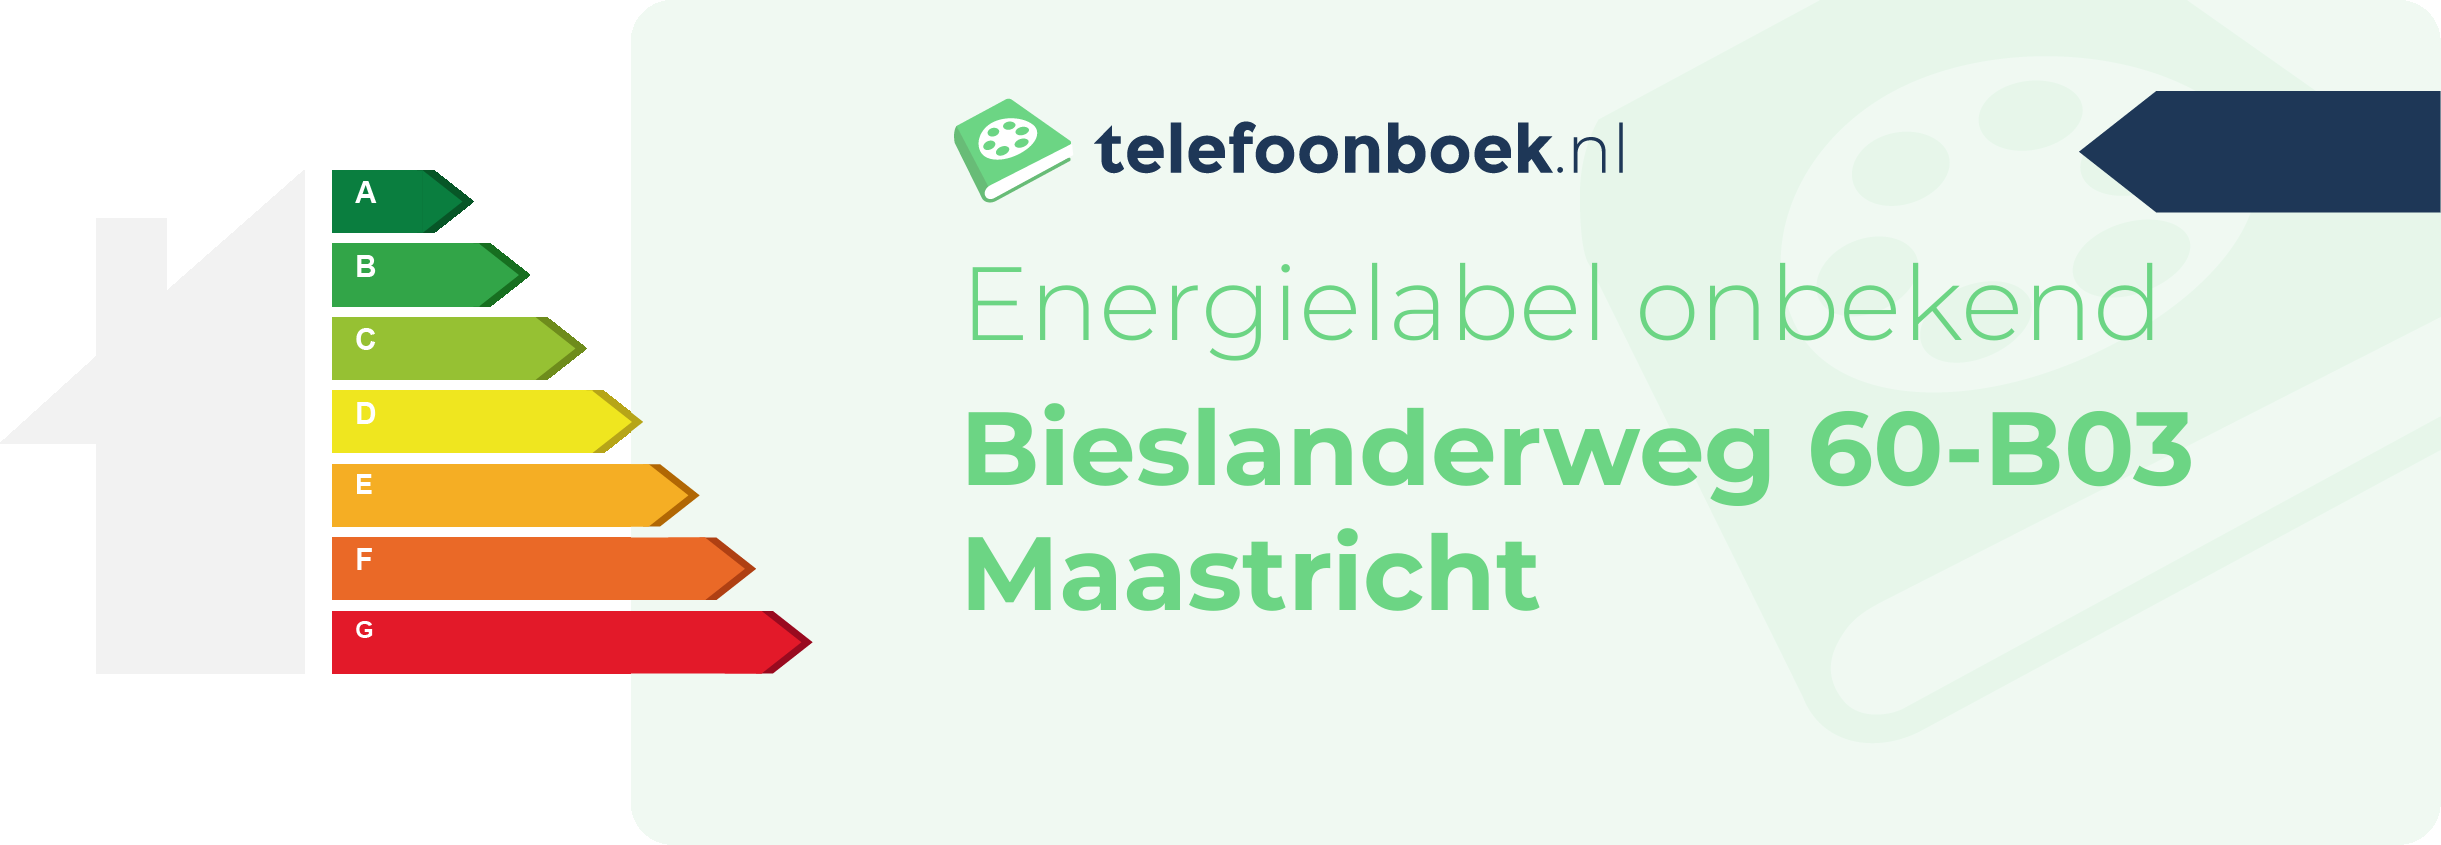 Energielabel Bieslanderweg 60-B03 Maastricht